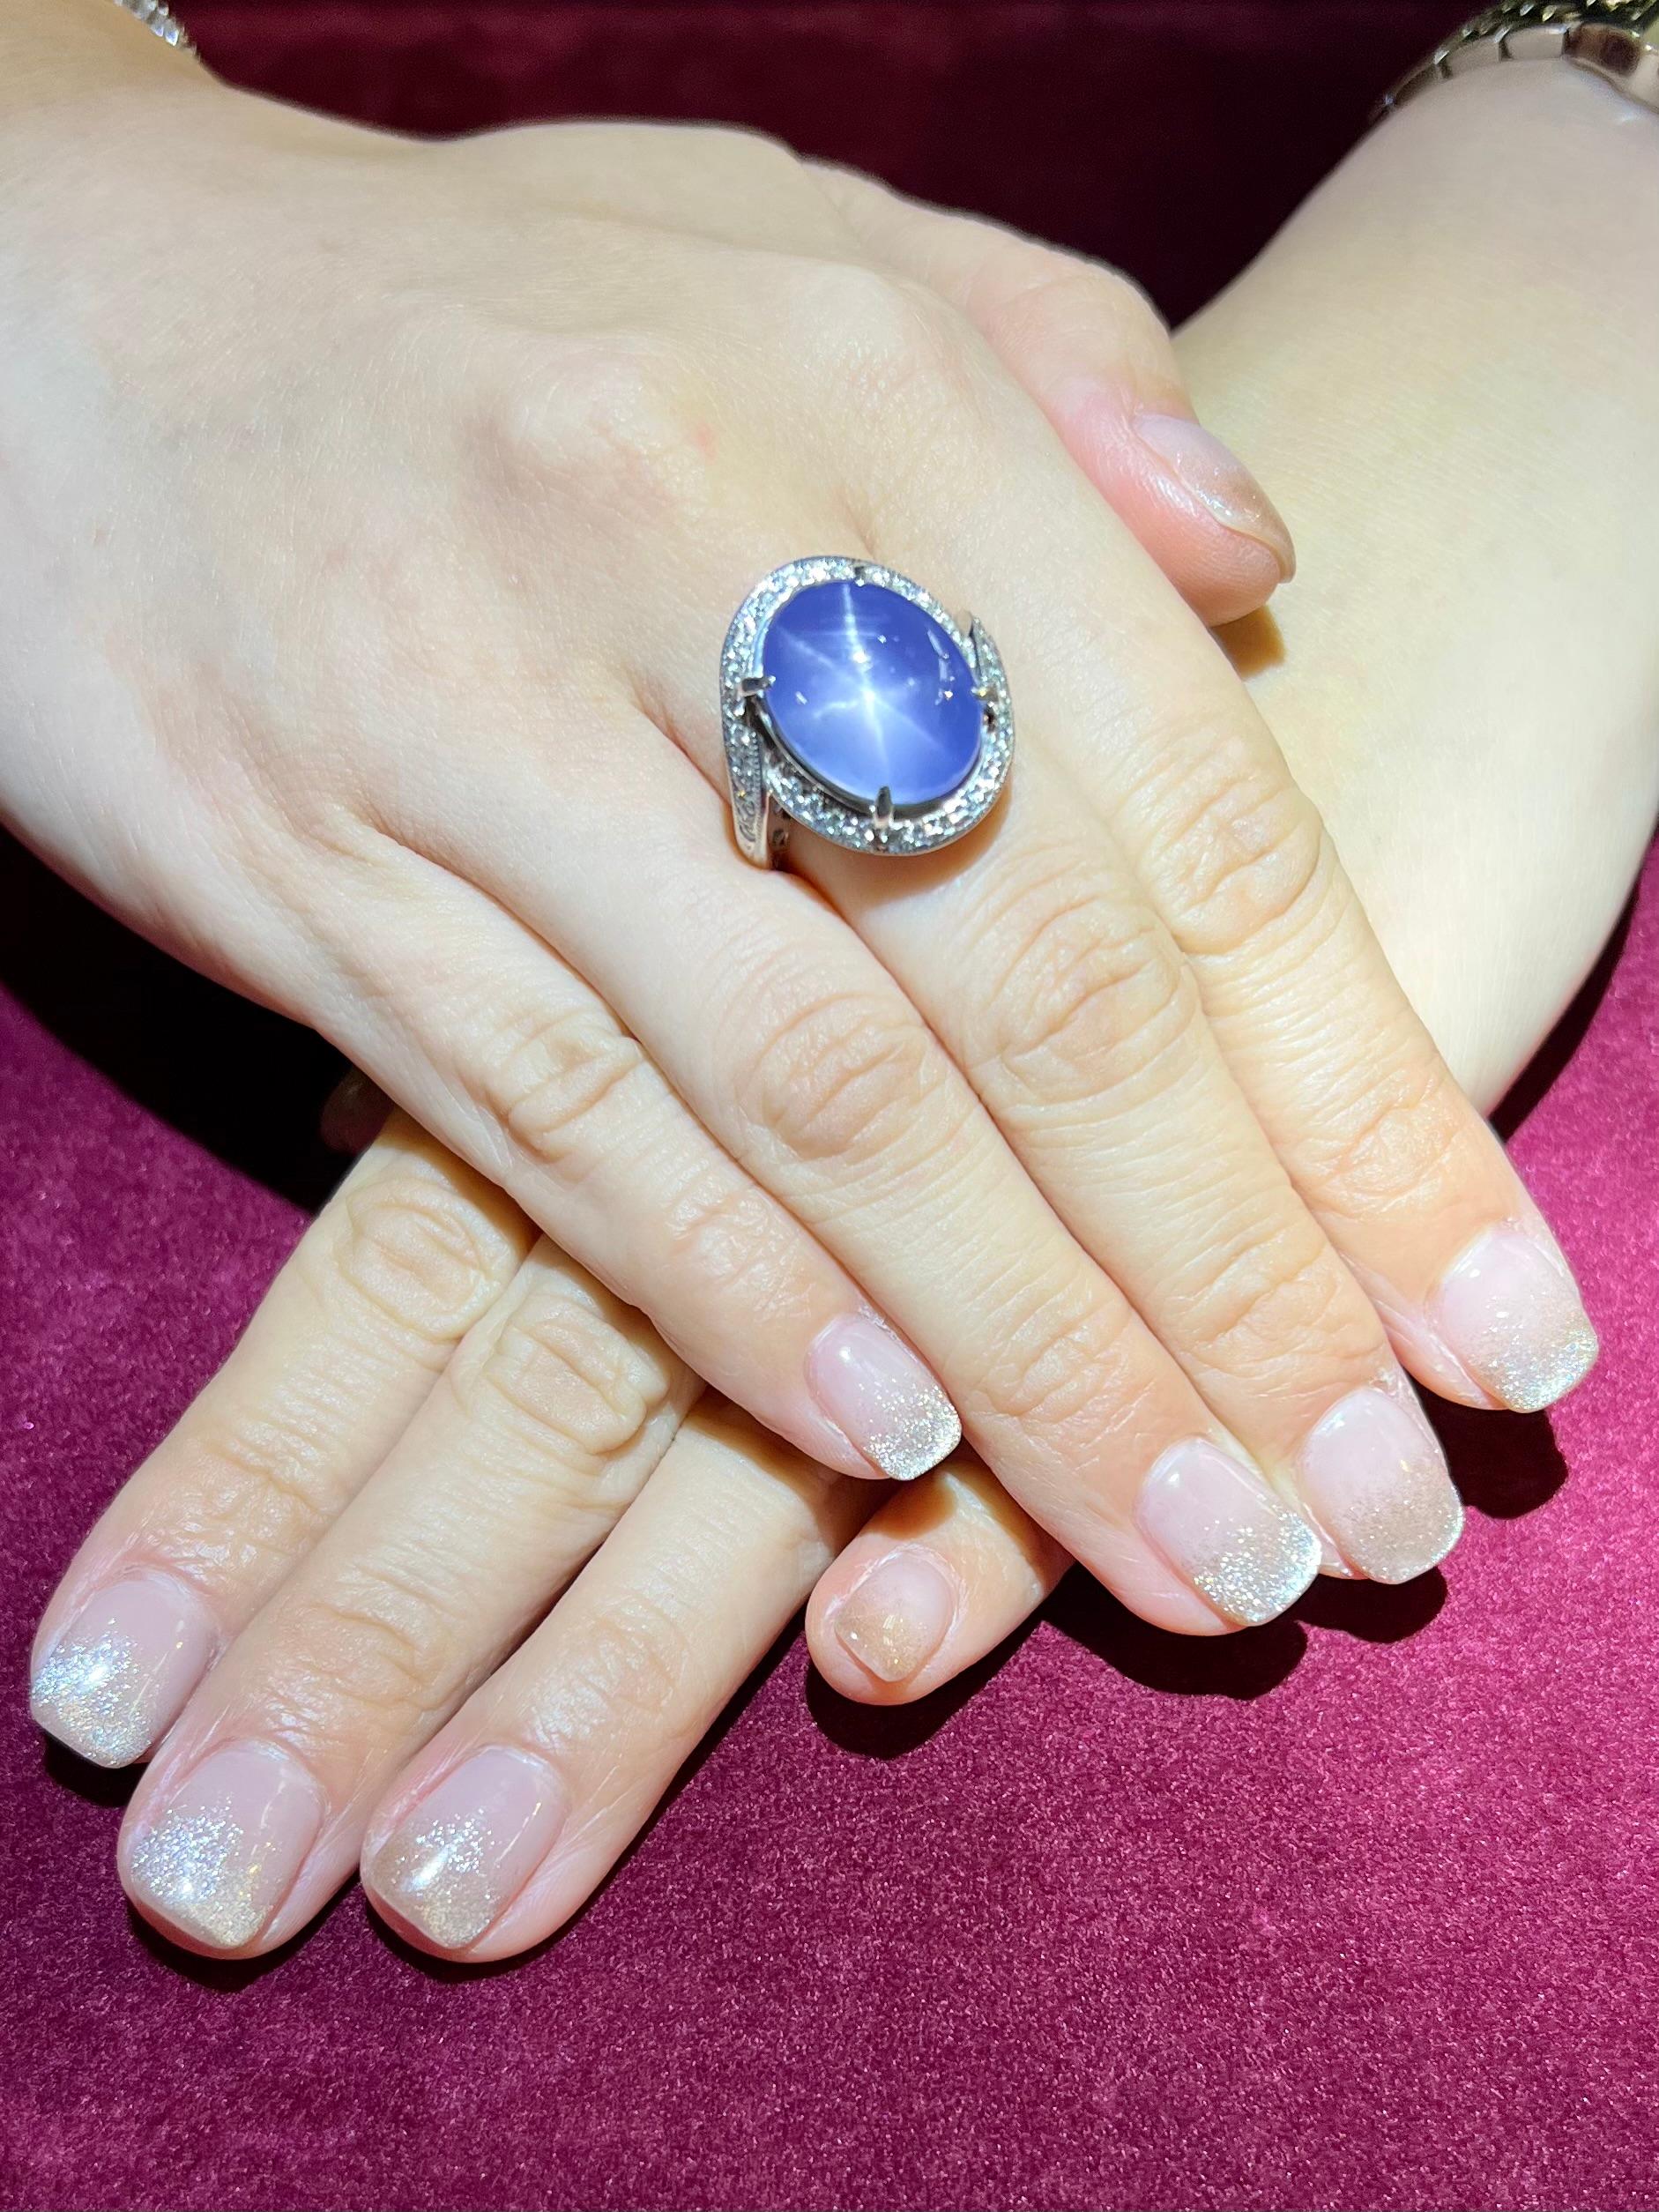 Bitte sehen Sie sich das HD-Video an. Hier ist ein hervorragender übergroßer Ring mit natürlichem Sternsaphir und Diamanten der berühmten japanischen Marke Tasaki. Der Ring ist aus 18-karätigem Weißgold und Diamanten gefertigt und mit der